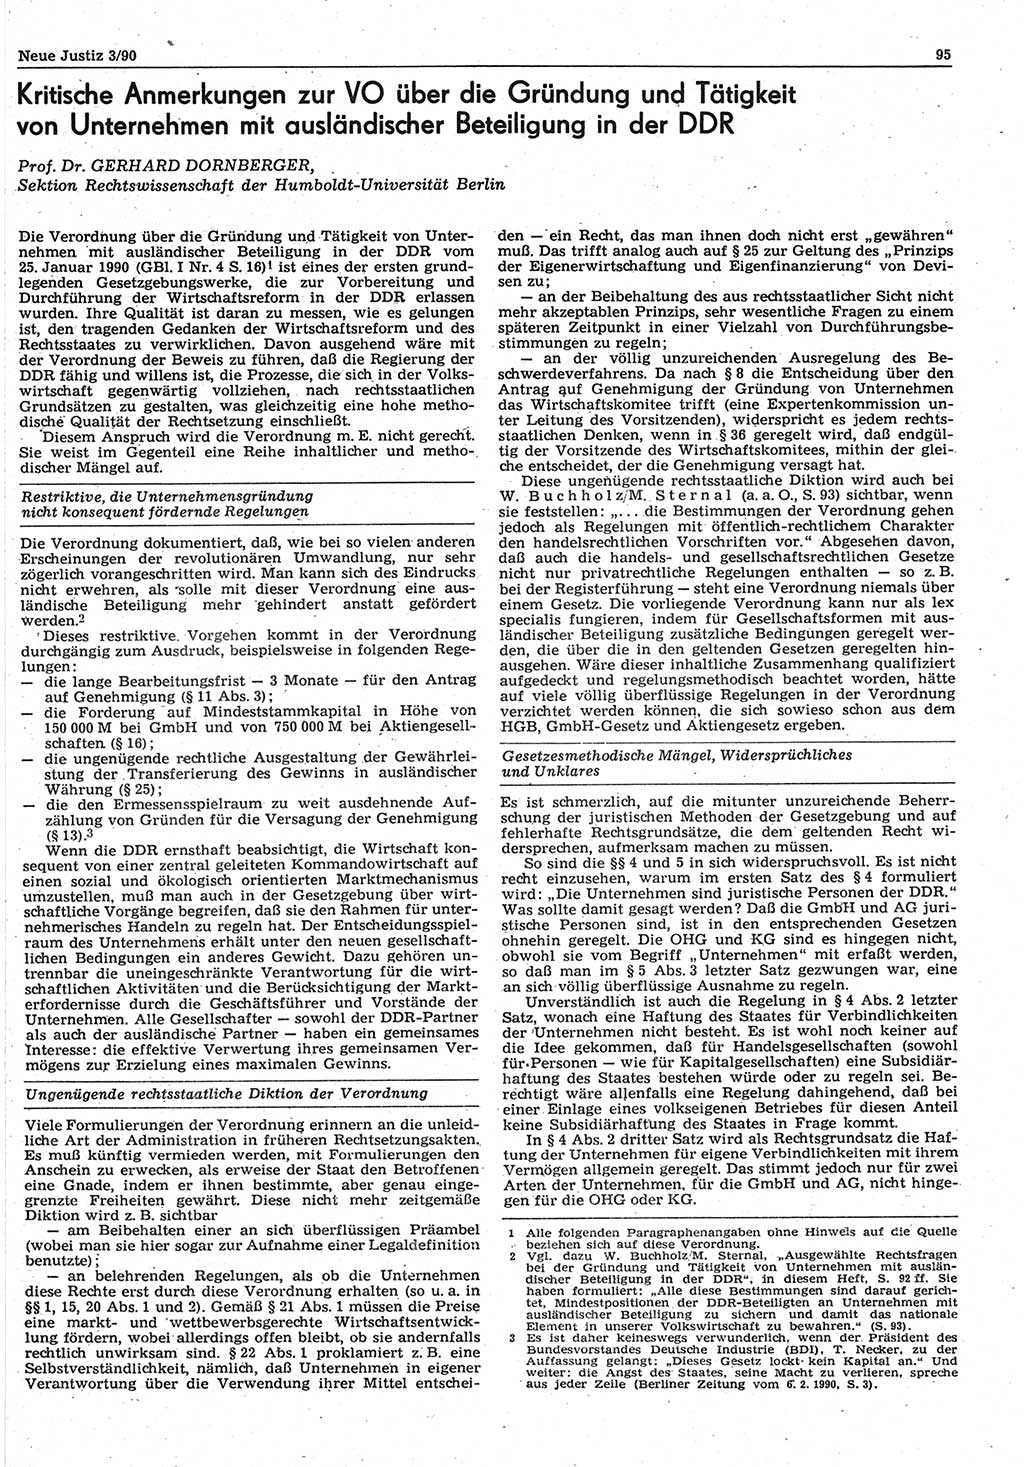 Neue Justiz (NJ), Zeitschrift für Rechtsetzung und Rechtsanwendung [Deutsche Demokratische Republik (DDR)], 44. Jahrgang 1990, Seite 95 (NJ DDR 1990, S. 95)